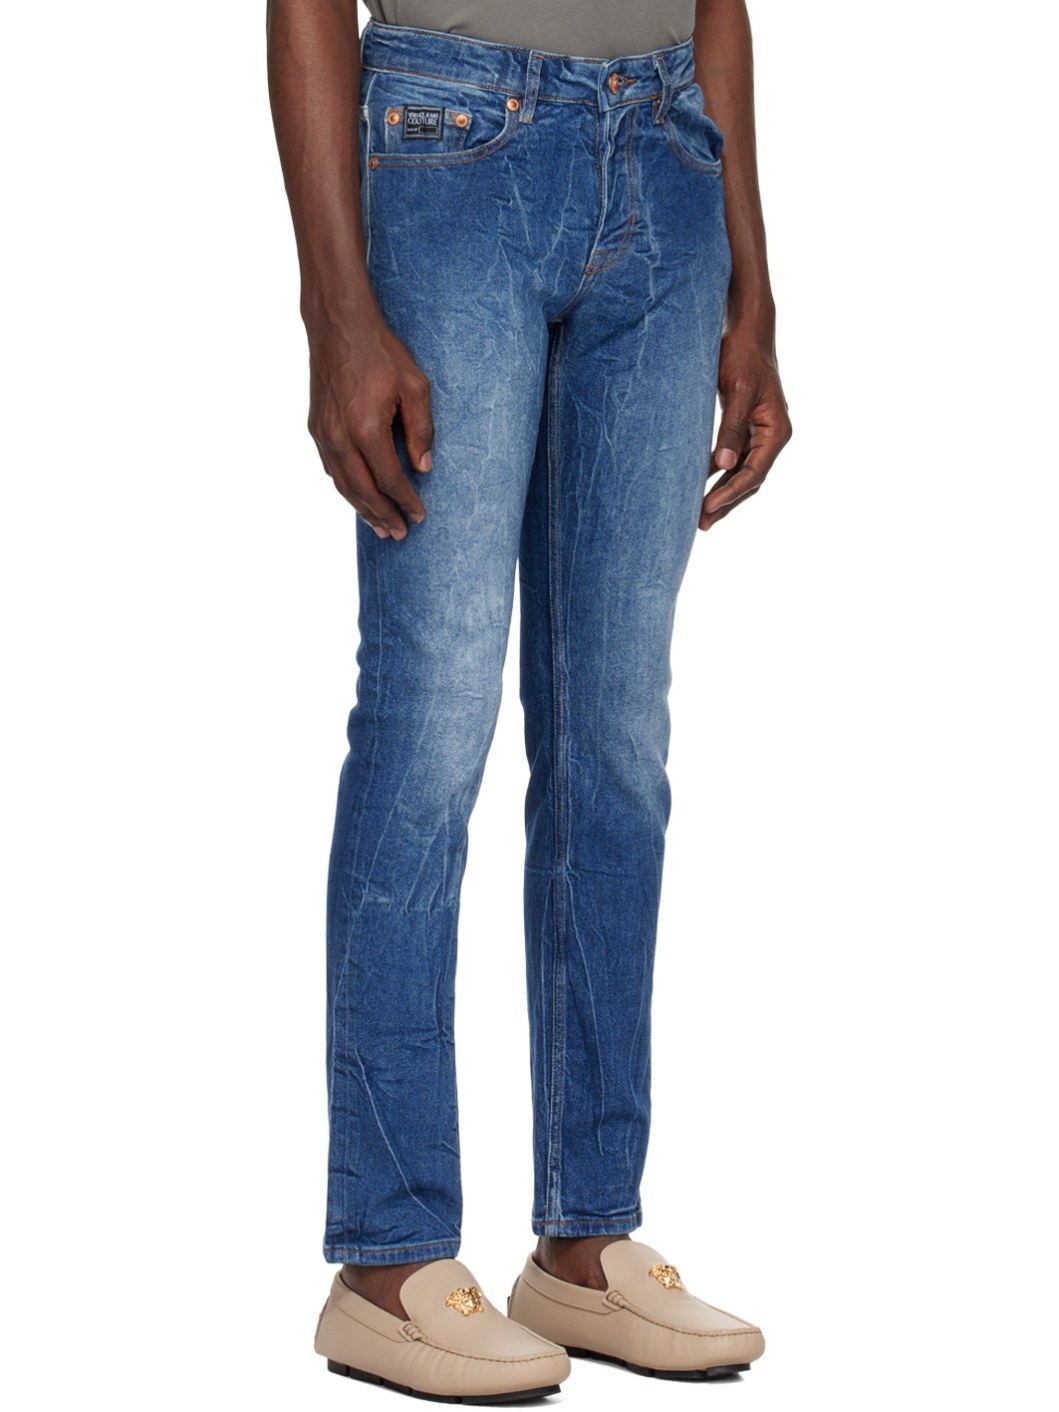 Indigo Slim-Fit Jeans - 2